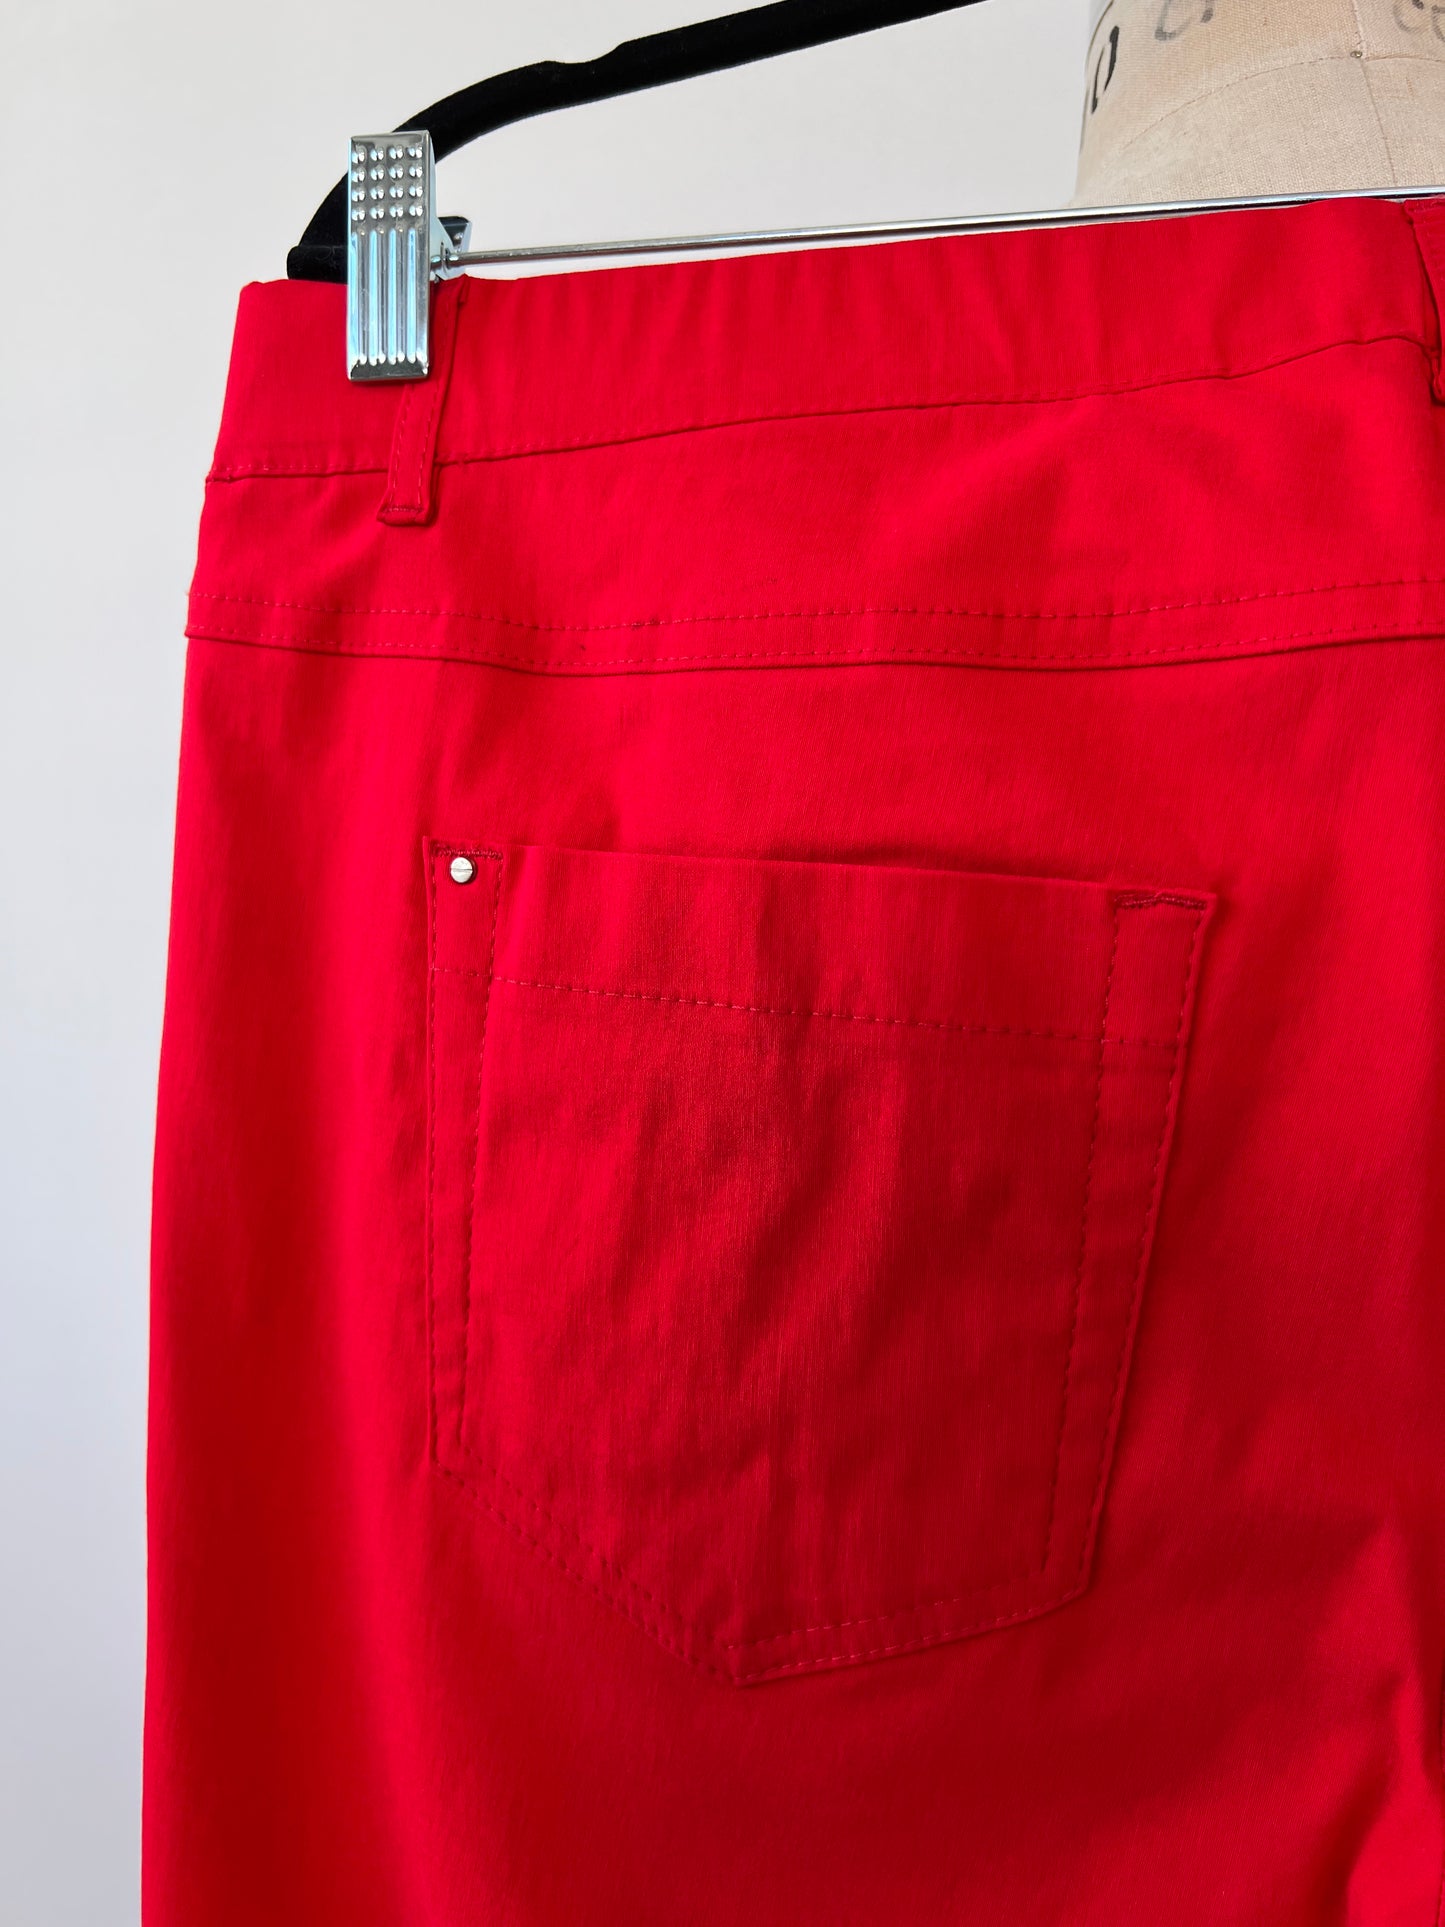 Pantalon extensible rouge à ourlets oeillets (16/18)